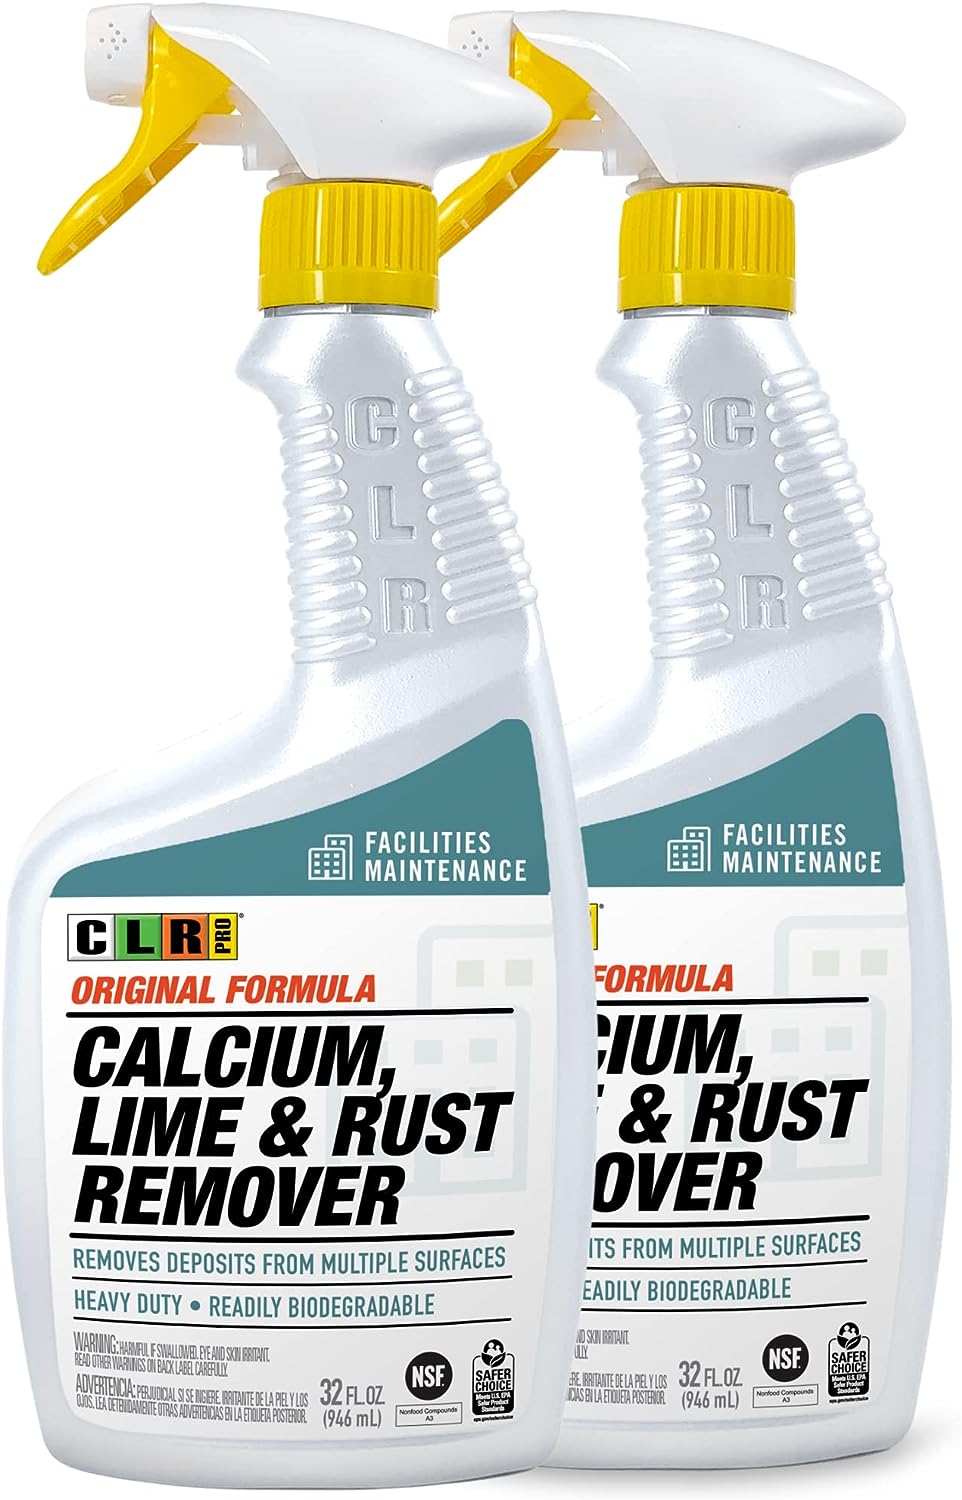 CLR PRO Industrial Calcium, Lime & Rust Remover - [...]